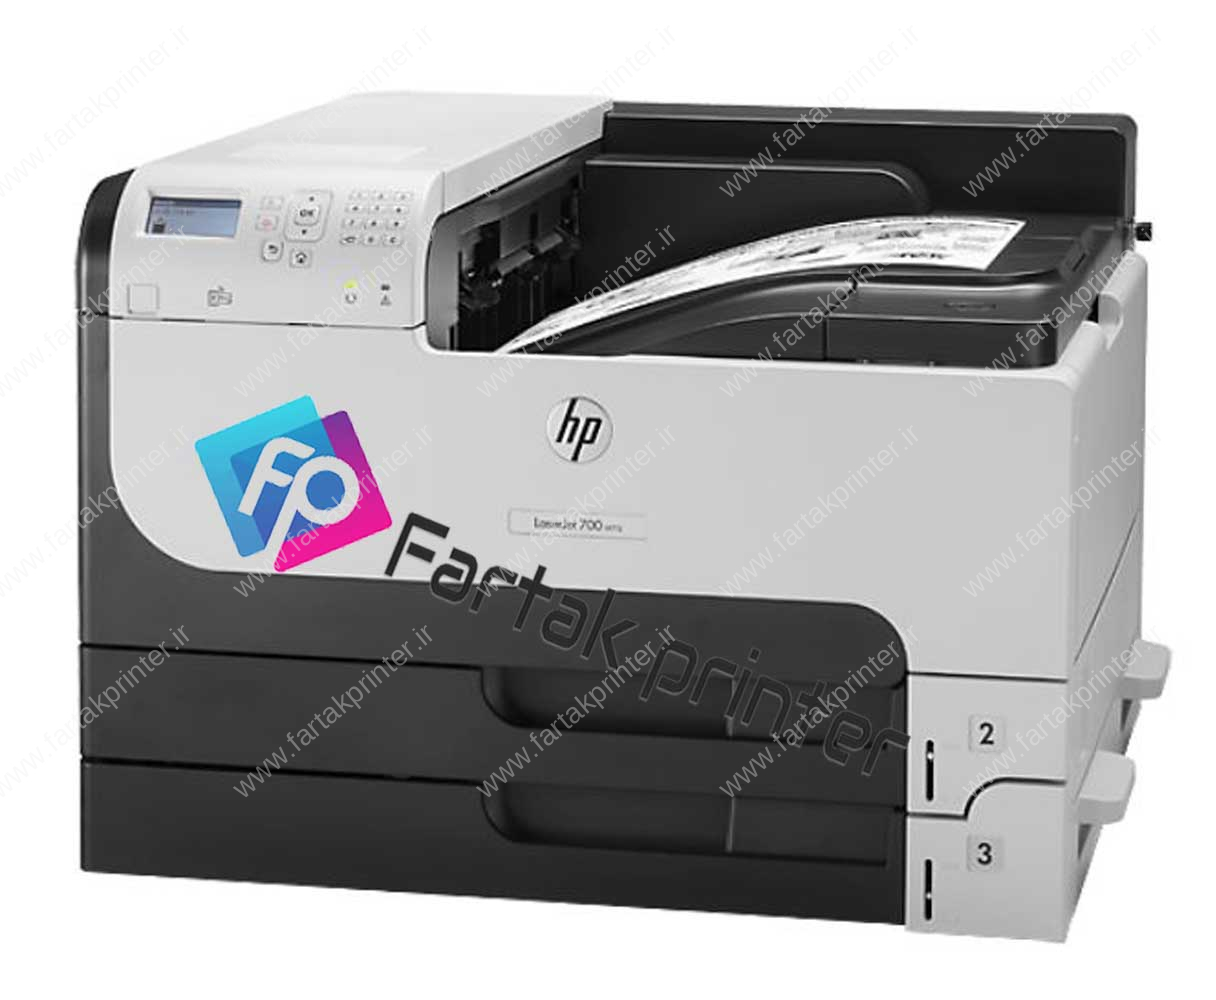 HP LaserJet Enterprise 700 printer M712dn استوک اروپا